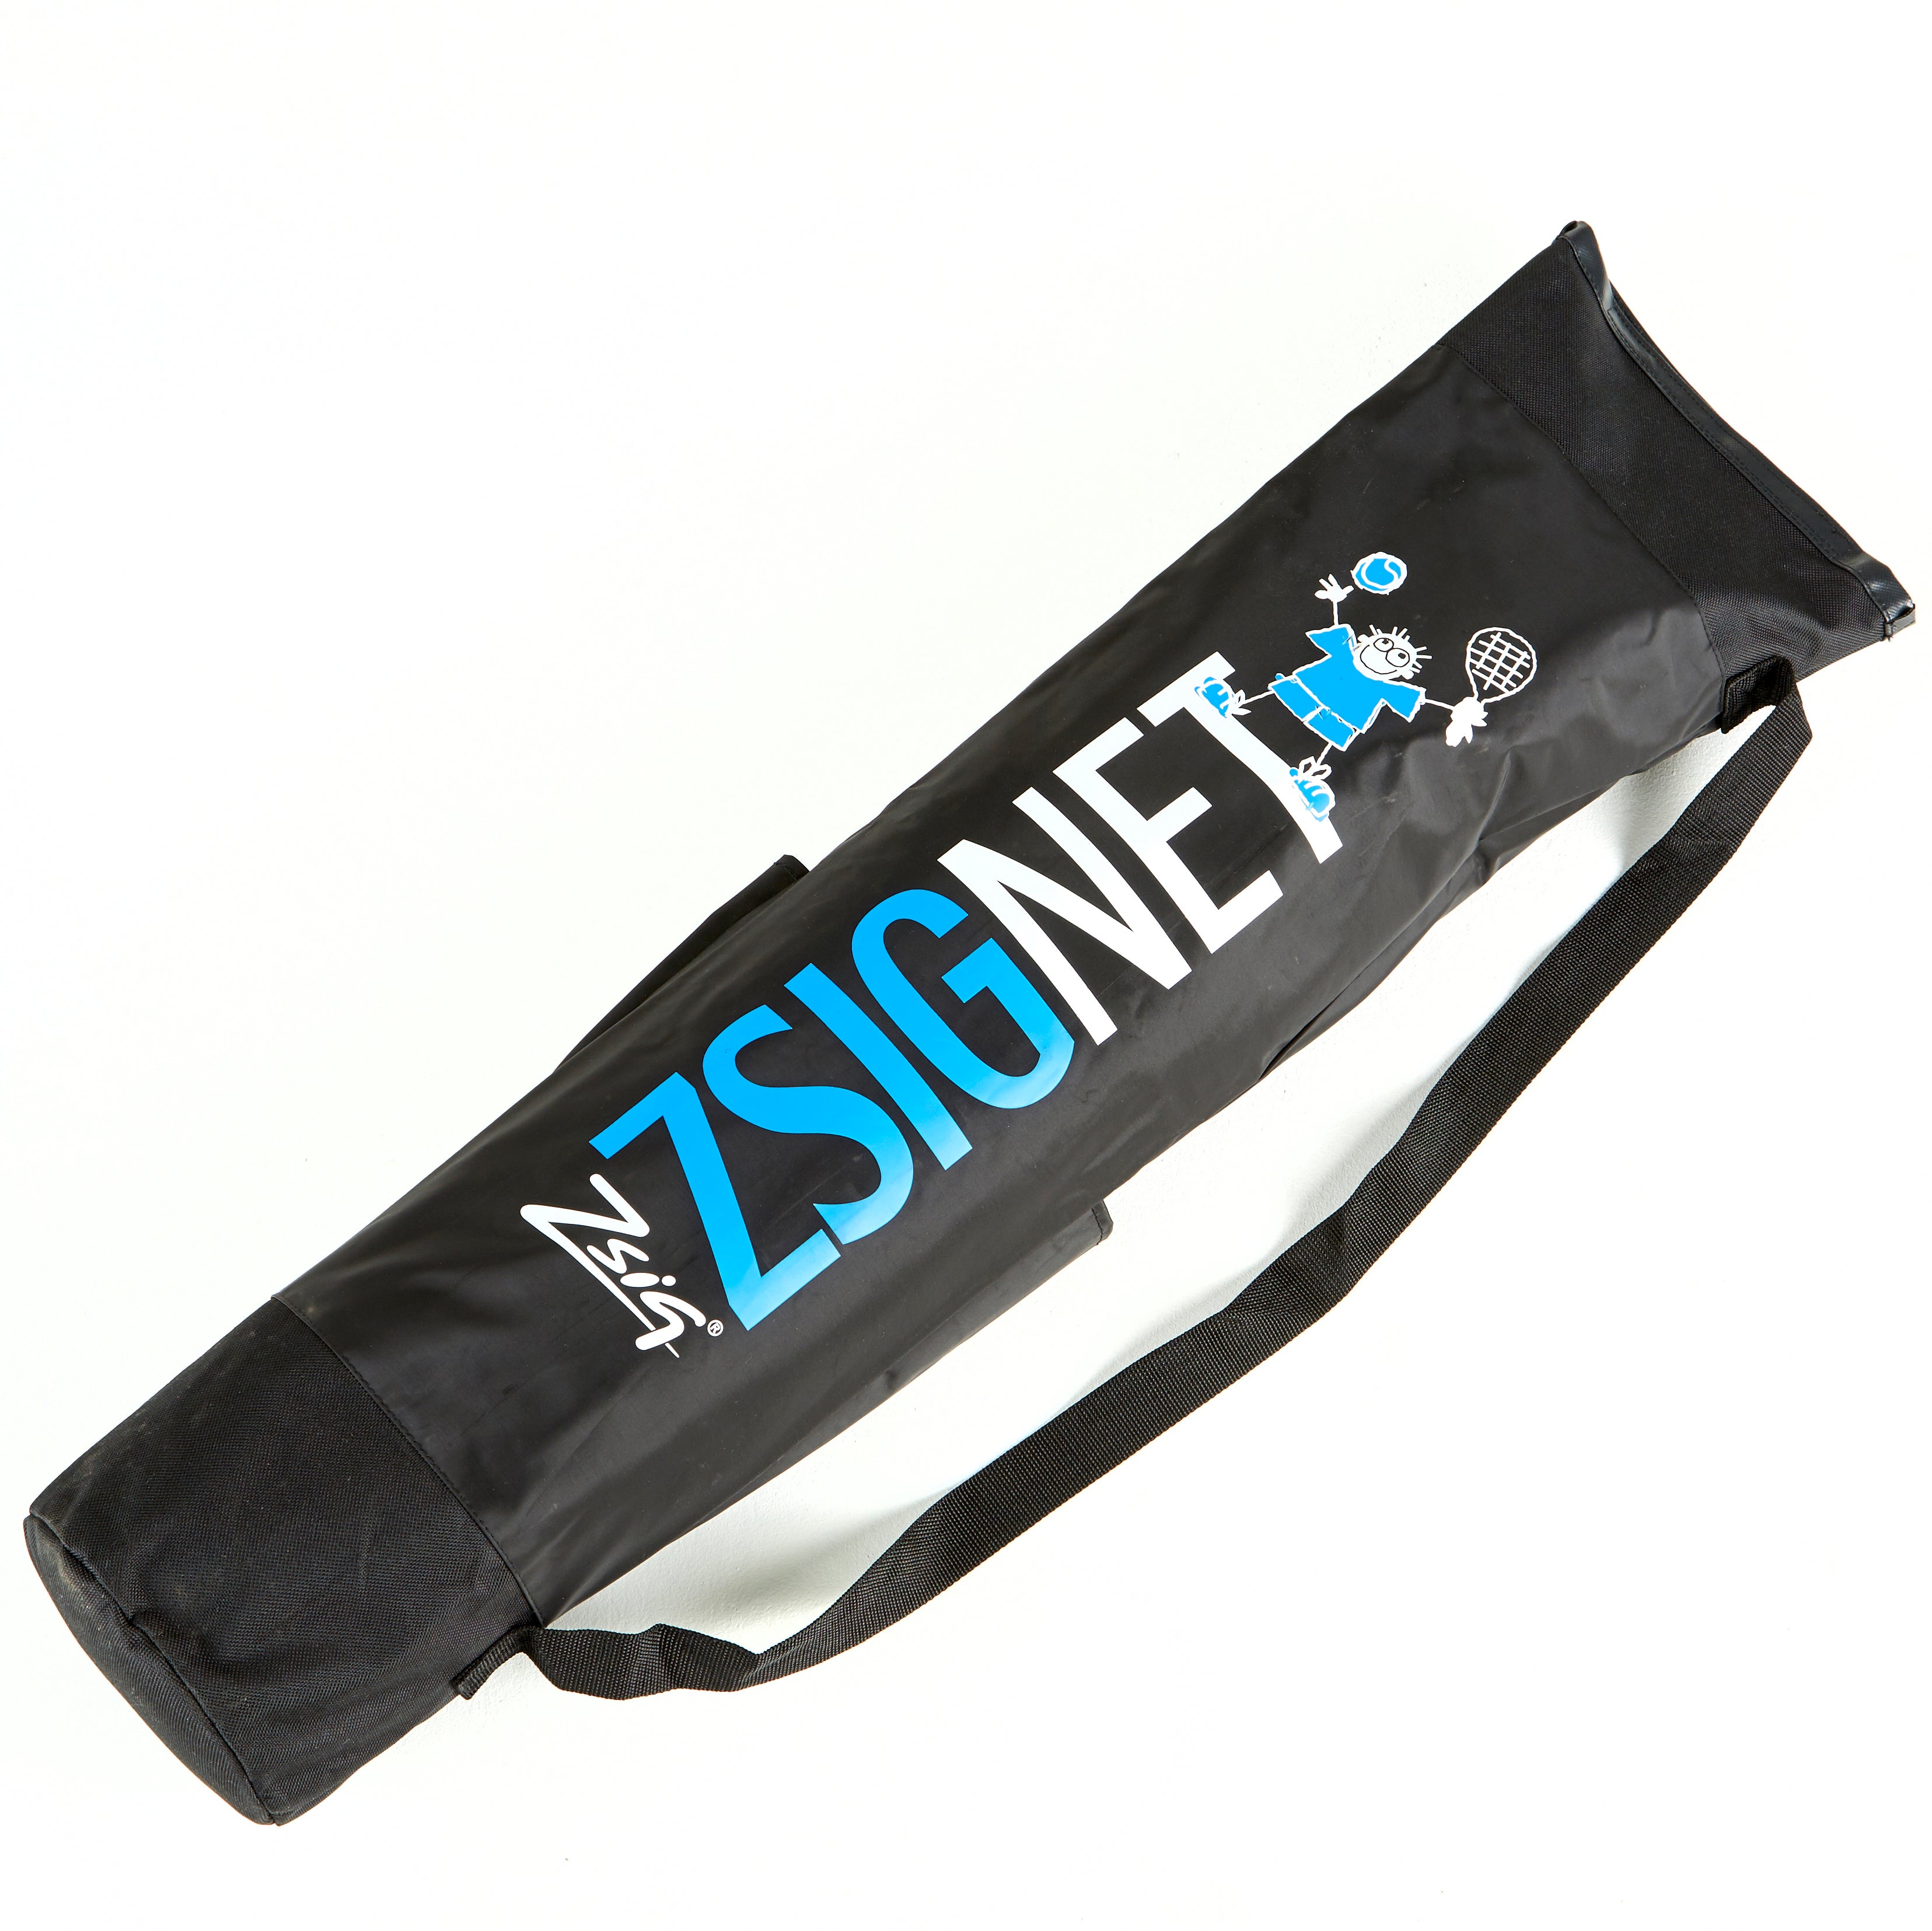 Reinforced shoulder carry bag for our 6m Badminton Net System